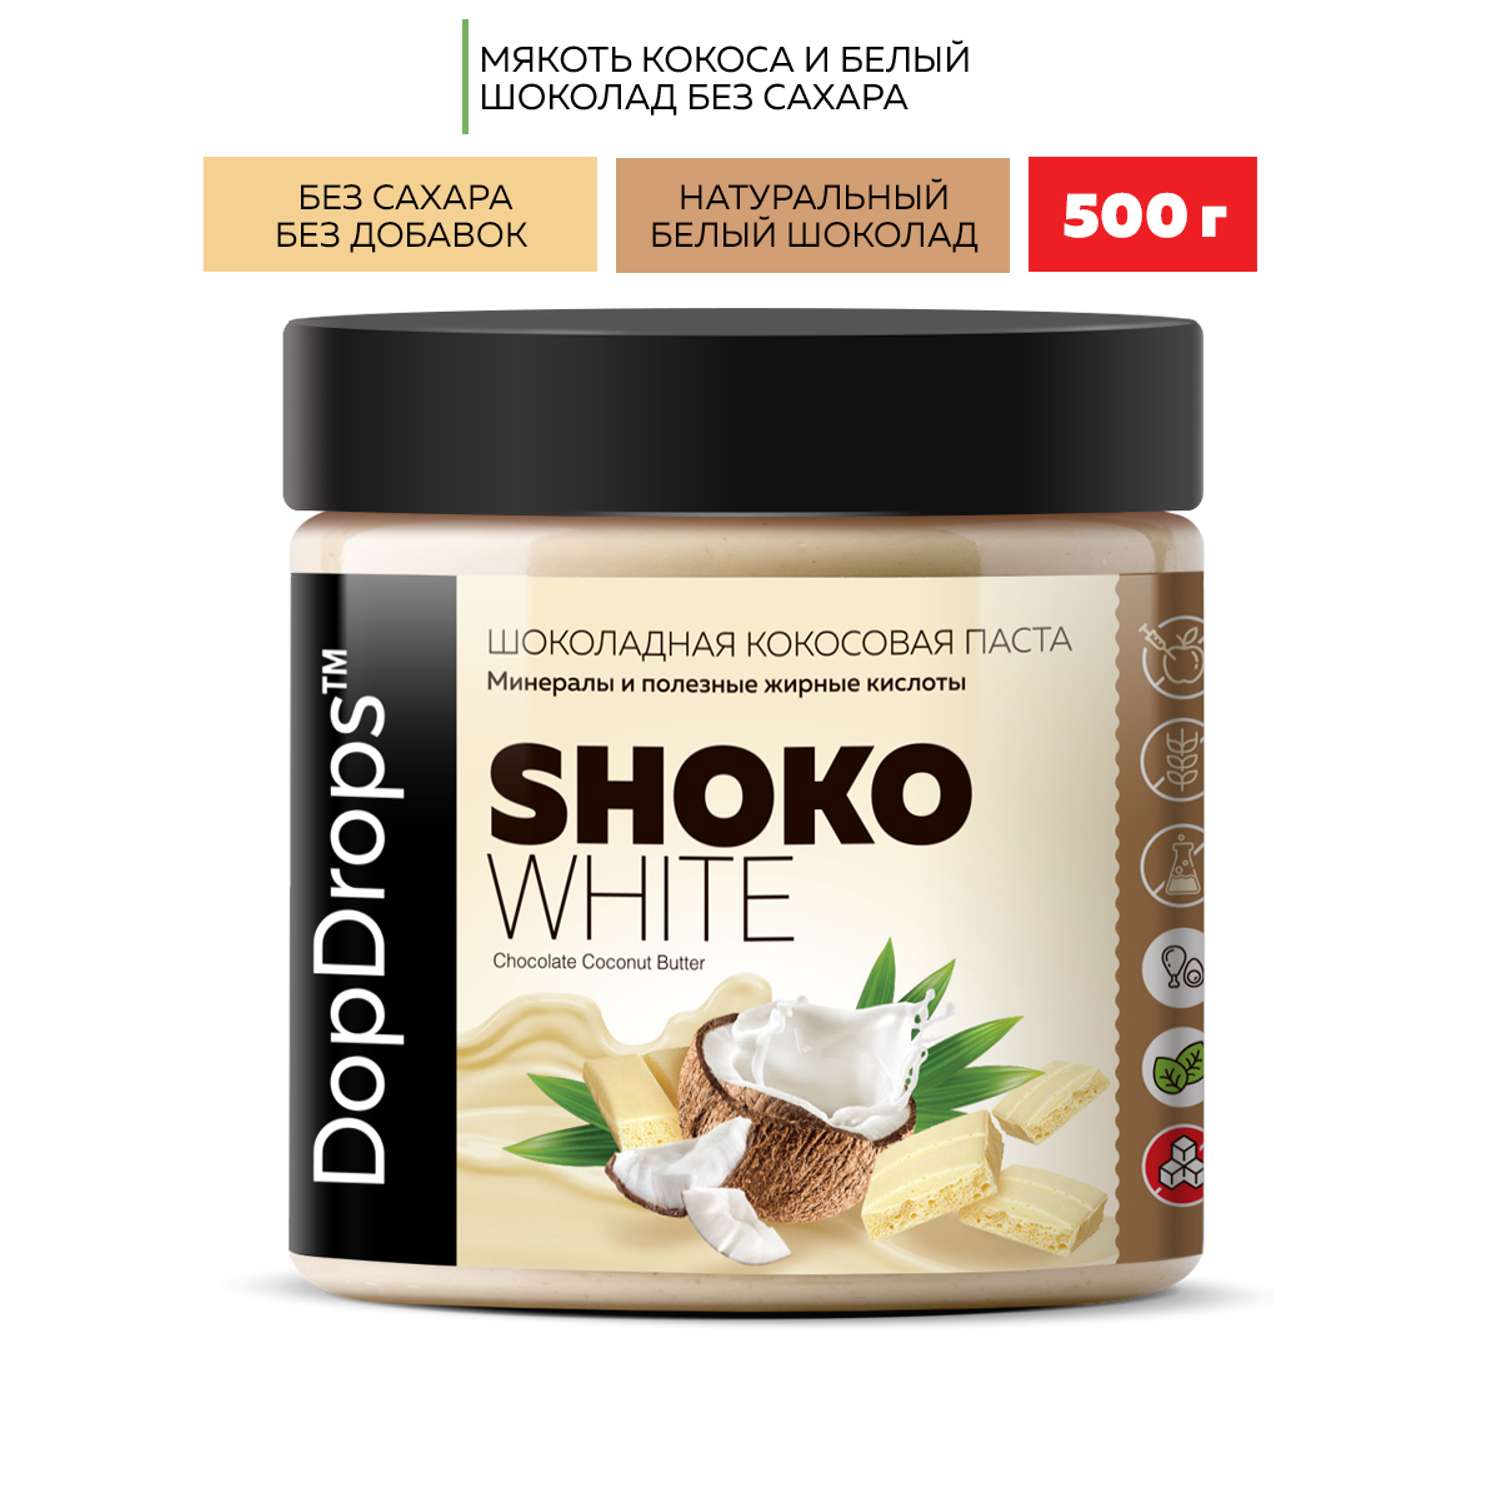 Кокосовая паста DopDrops белый шоколад без сахара SHOKO WHITE 500 г - фото 1